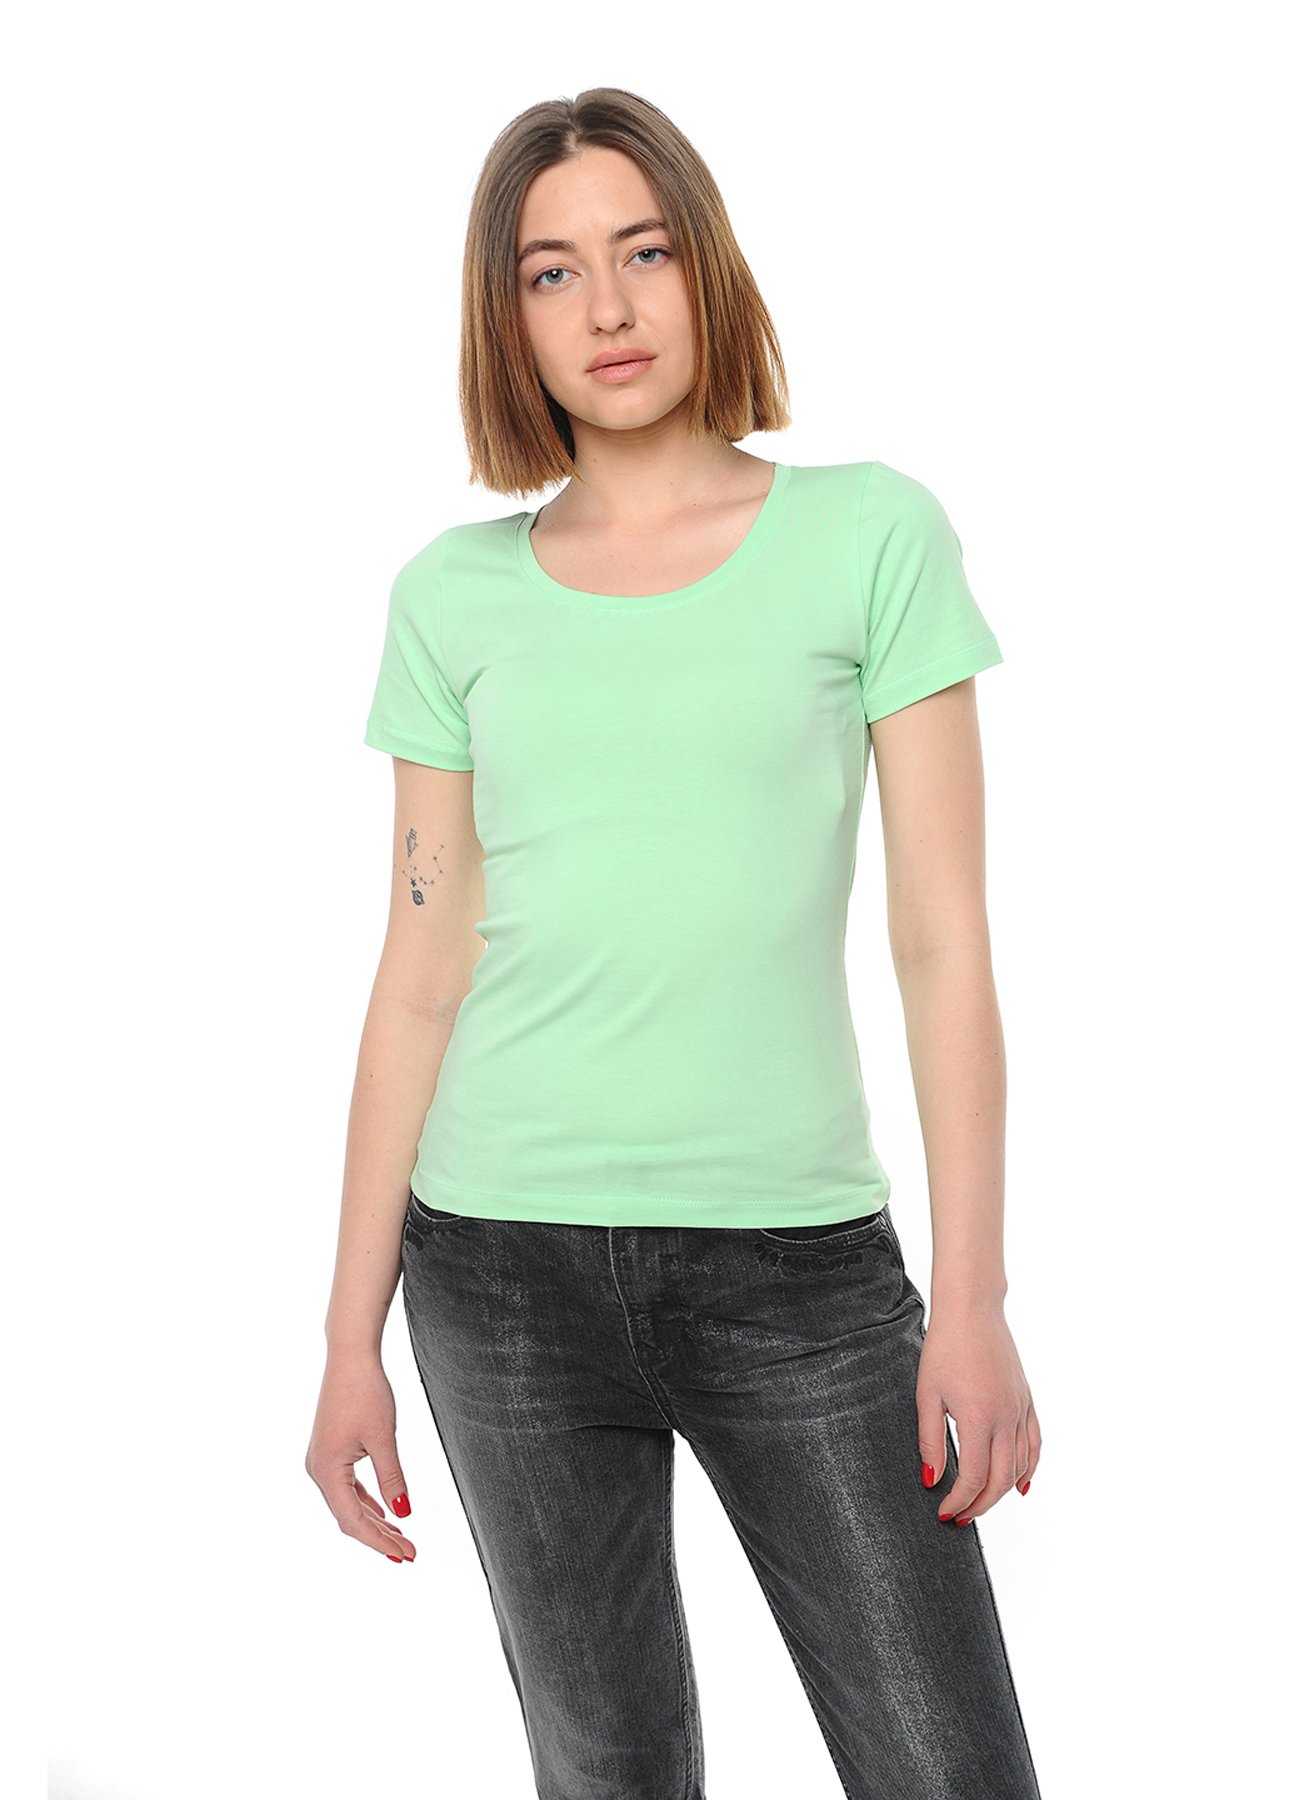 футболка женская 41-2347 салатовый 2